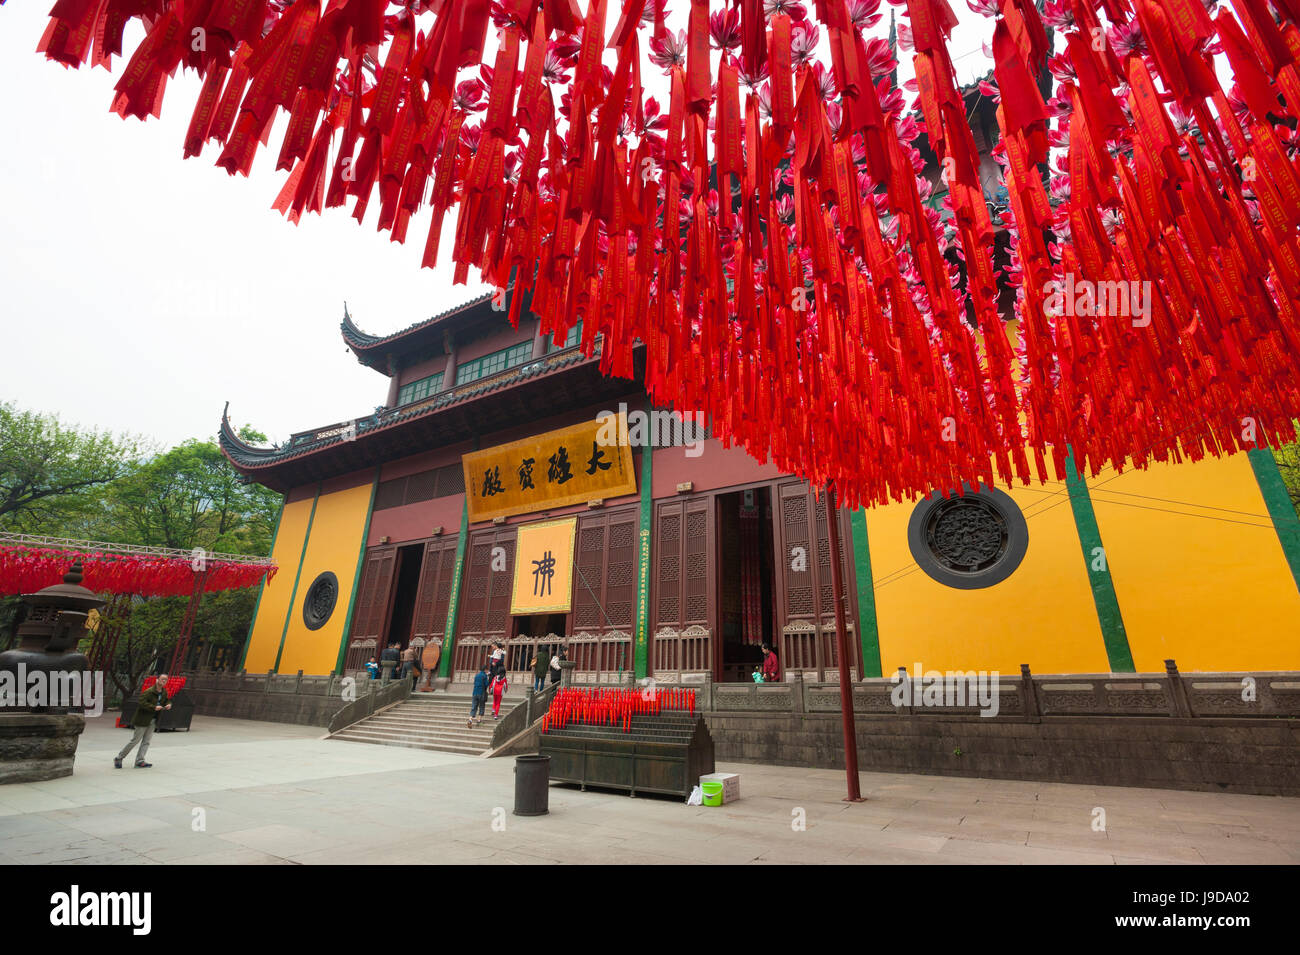 Lingyin Temple, Hangzhou, Zhejiang province, China, Asia Stock Photo